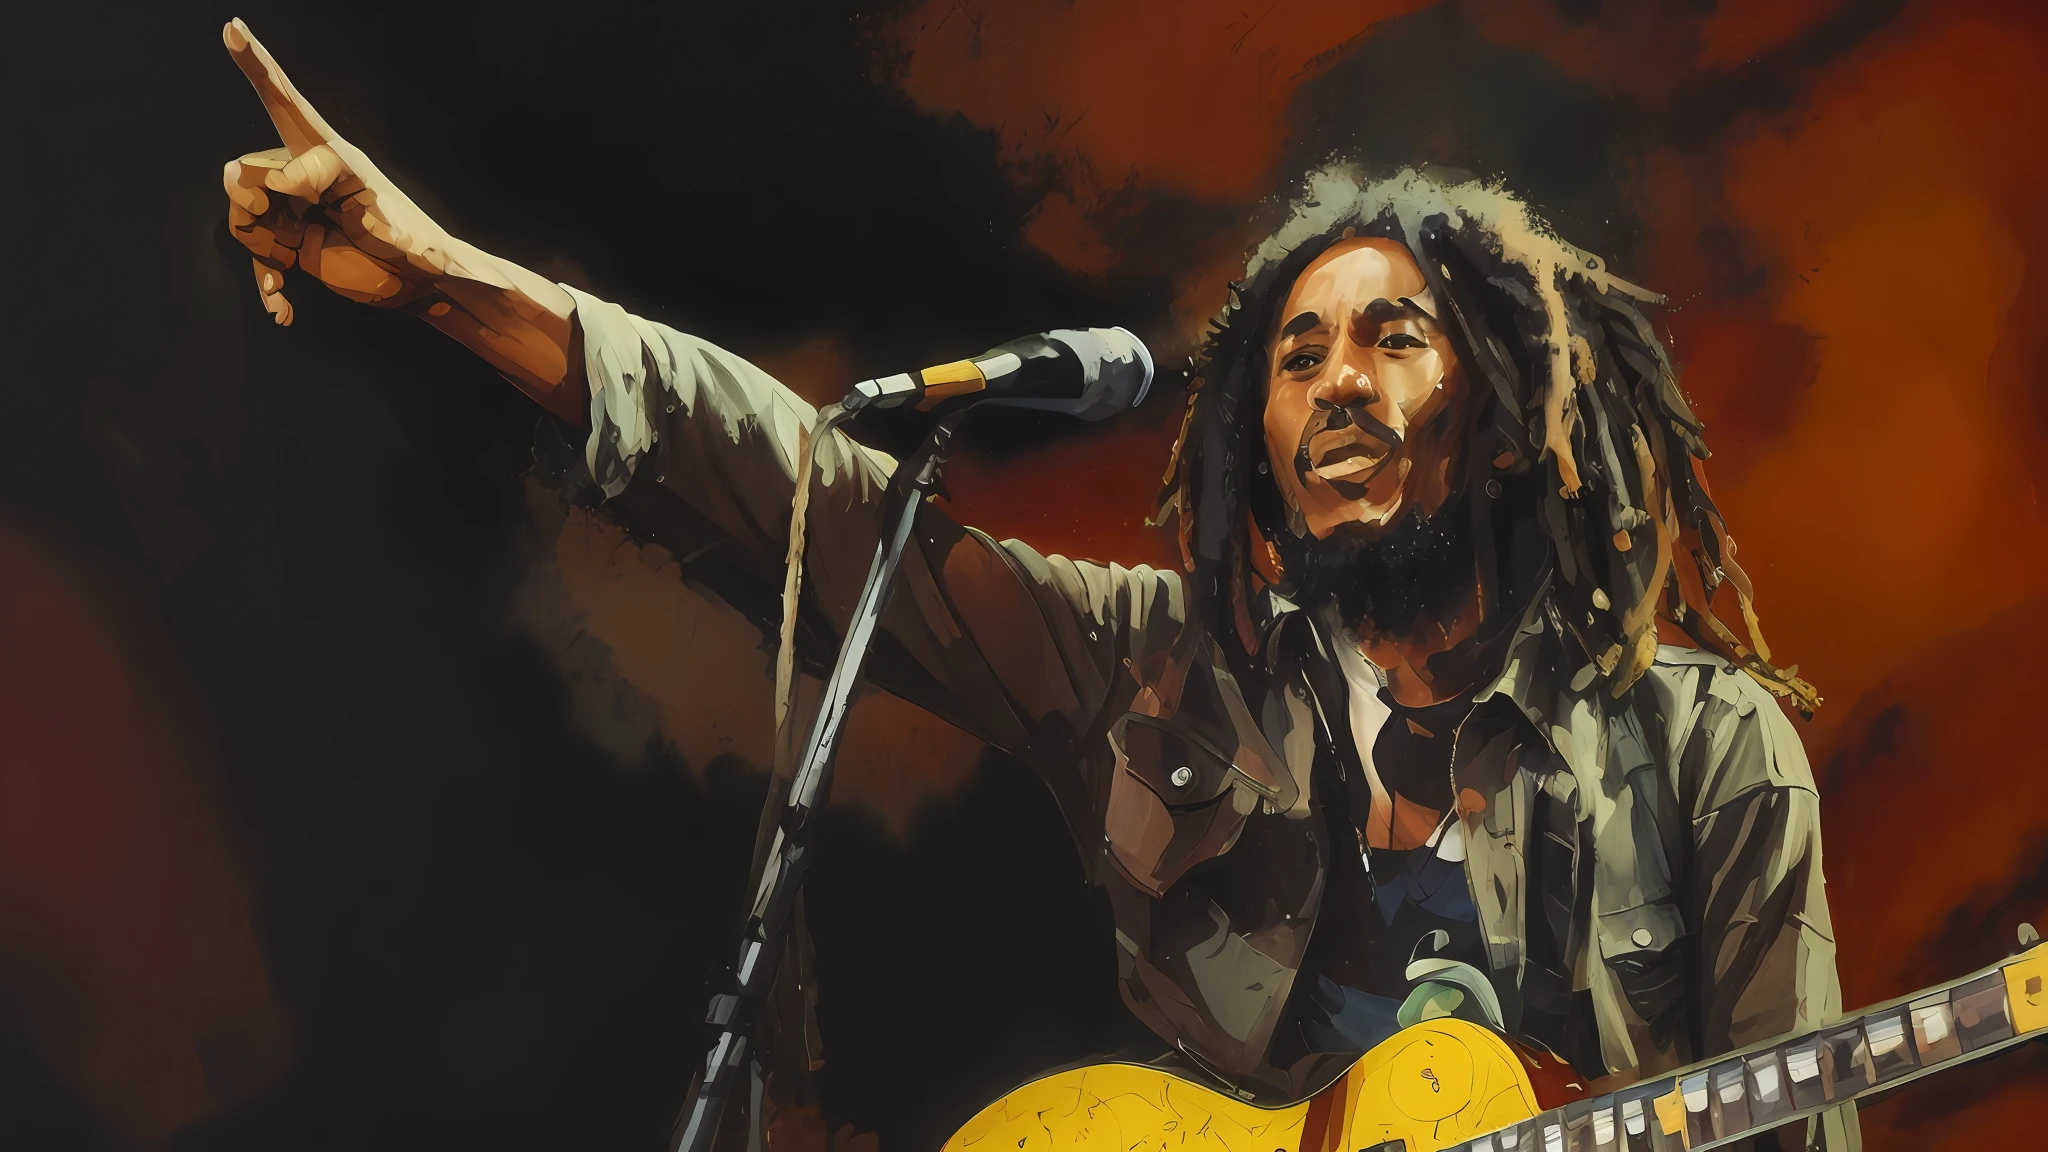 Hombre Arafed con pavor, Bob Marley, fotografía de conciertos de los años 70, foto cortesía del museo de arte, contra un fondo negro profundo, reggae, sobre fondo negro, Bob Marley tocando la guitarra, reggae art, con un brillante, tocando la guitarra en el escenario, luces de escenario de colores brillantes